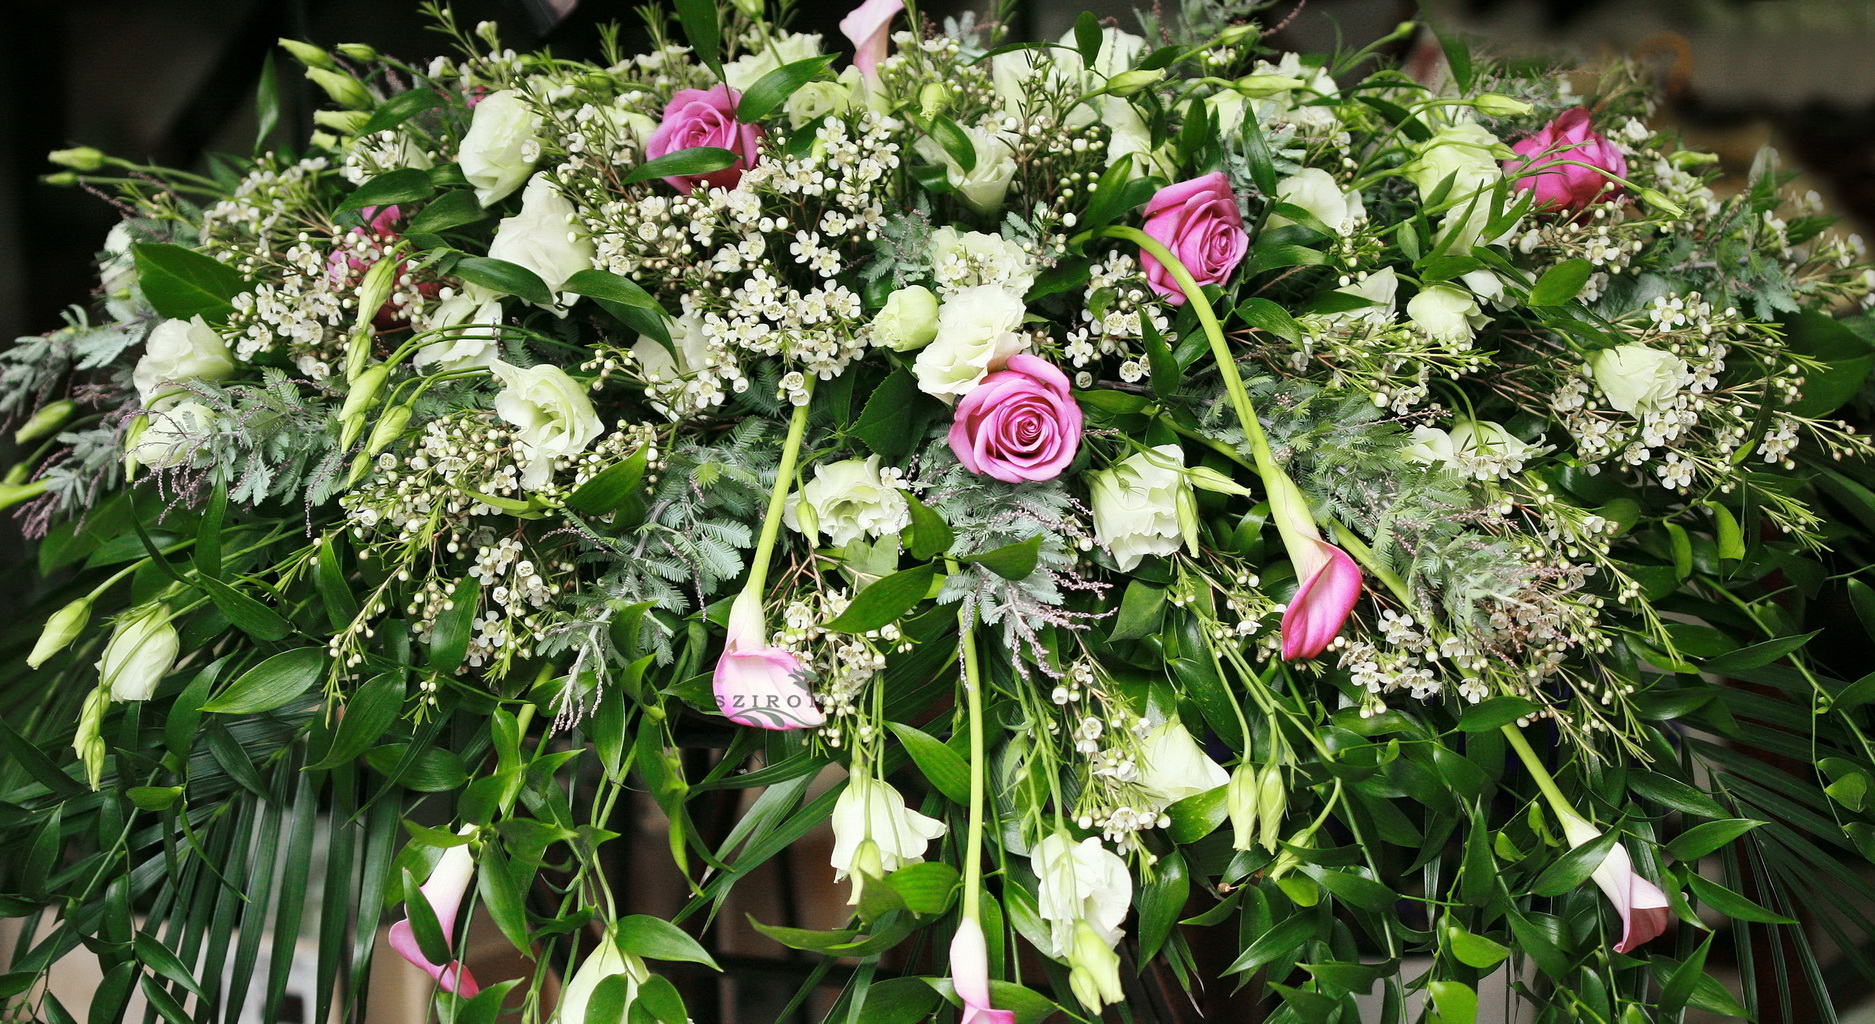 Főasztaldísz (lila rózsa, fehér liziantusz, kála, wax, mimóza levél), esküvő